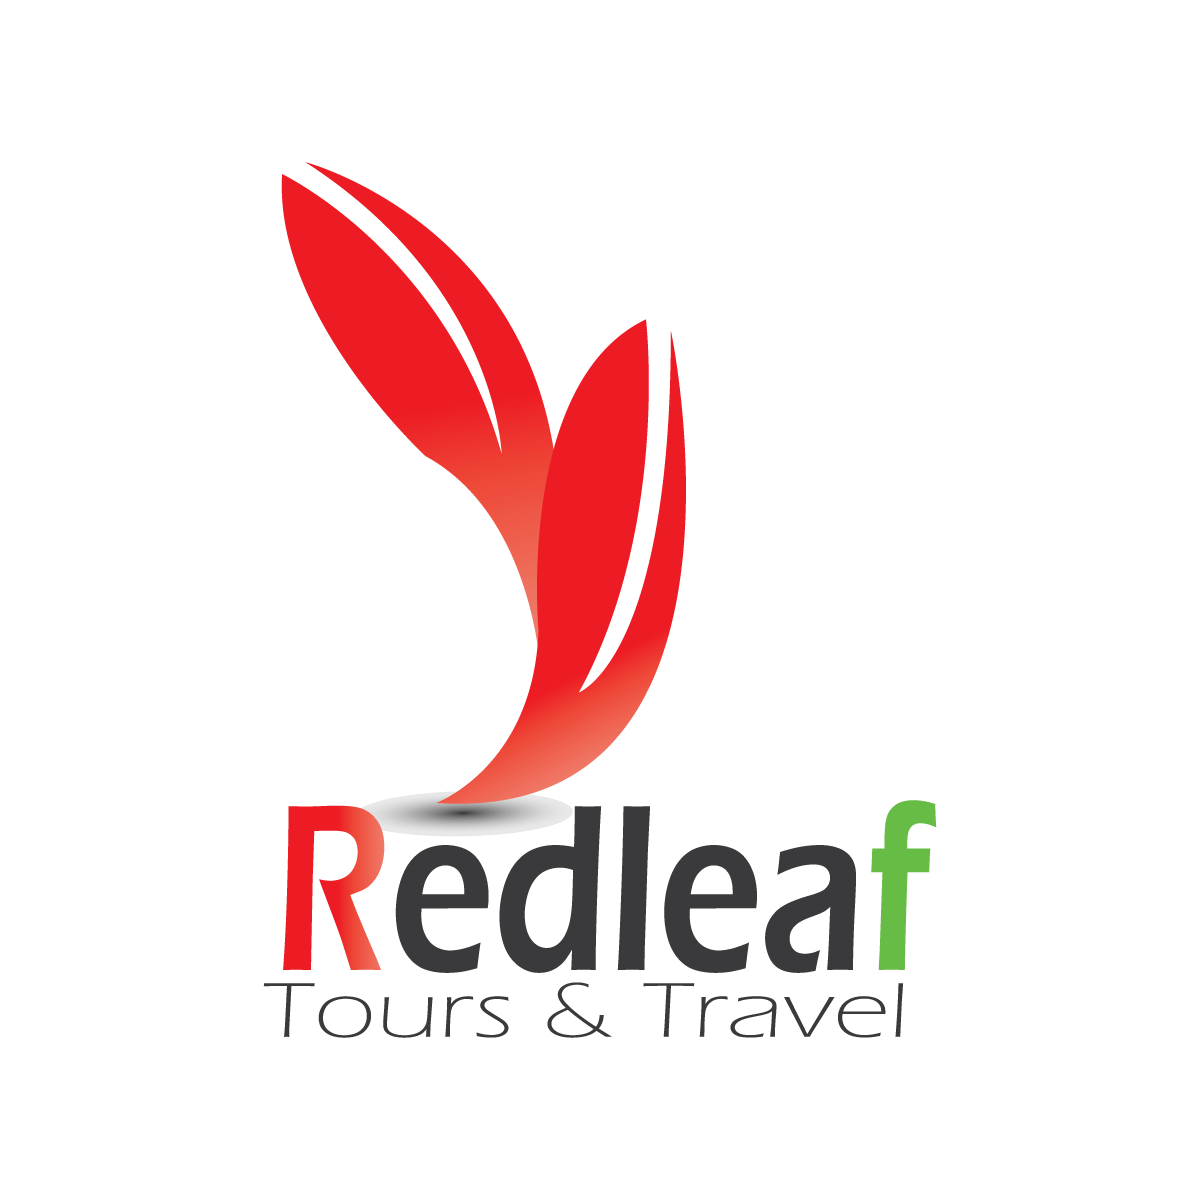 Red Leaf Logo - Trusted Travel Partner